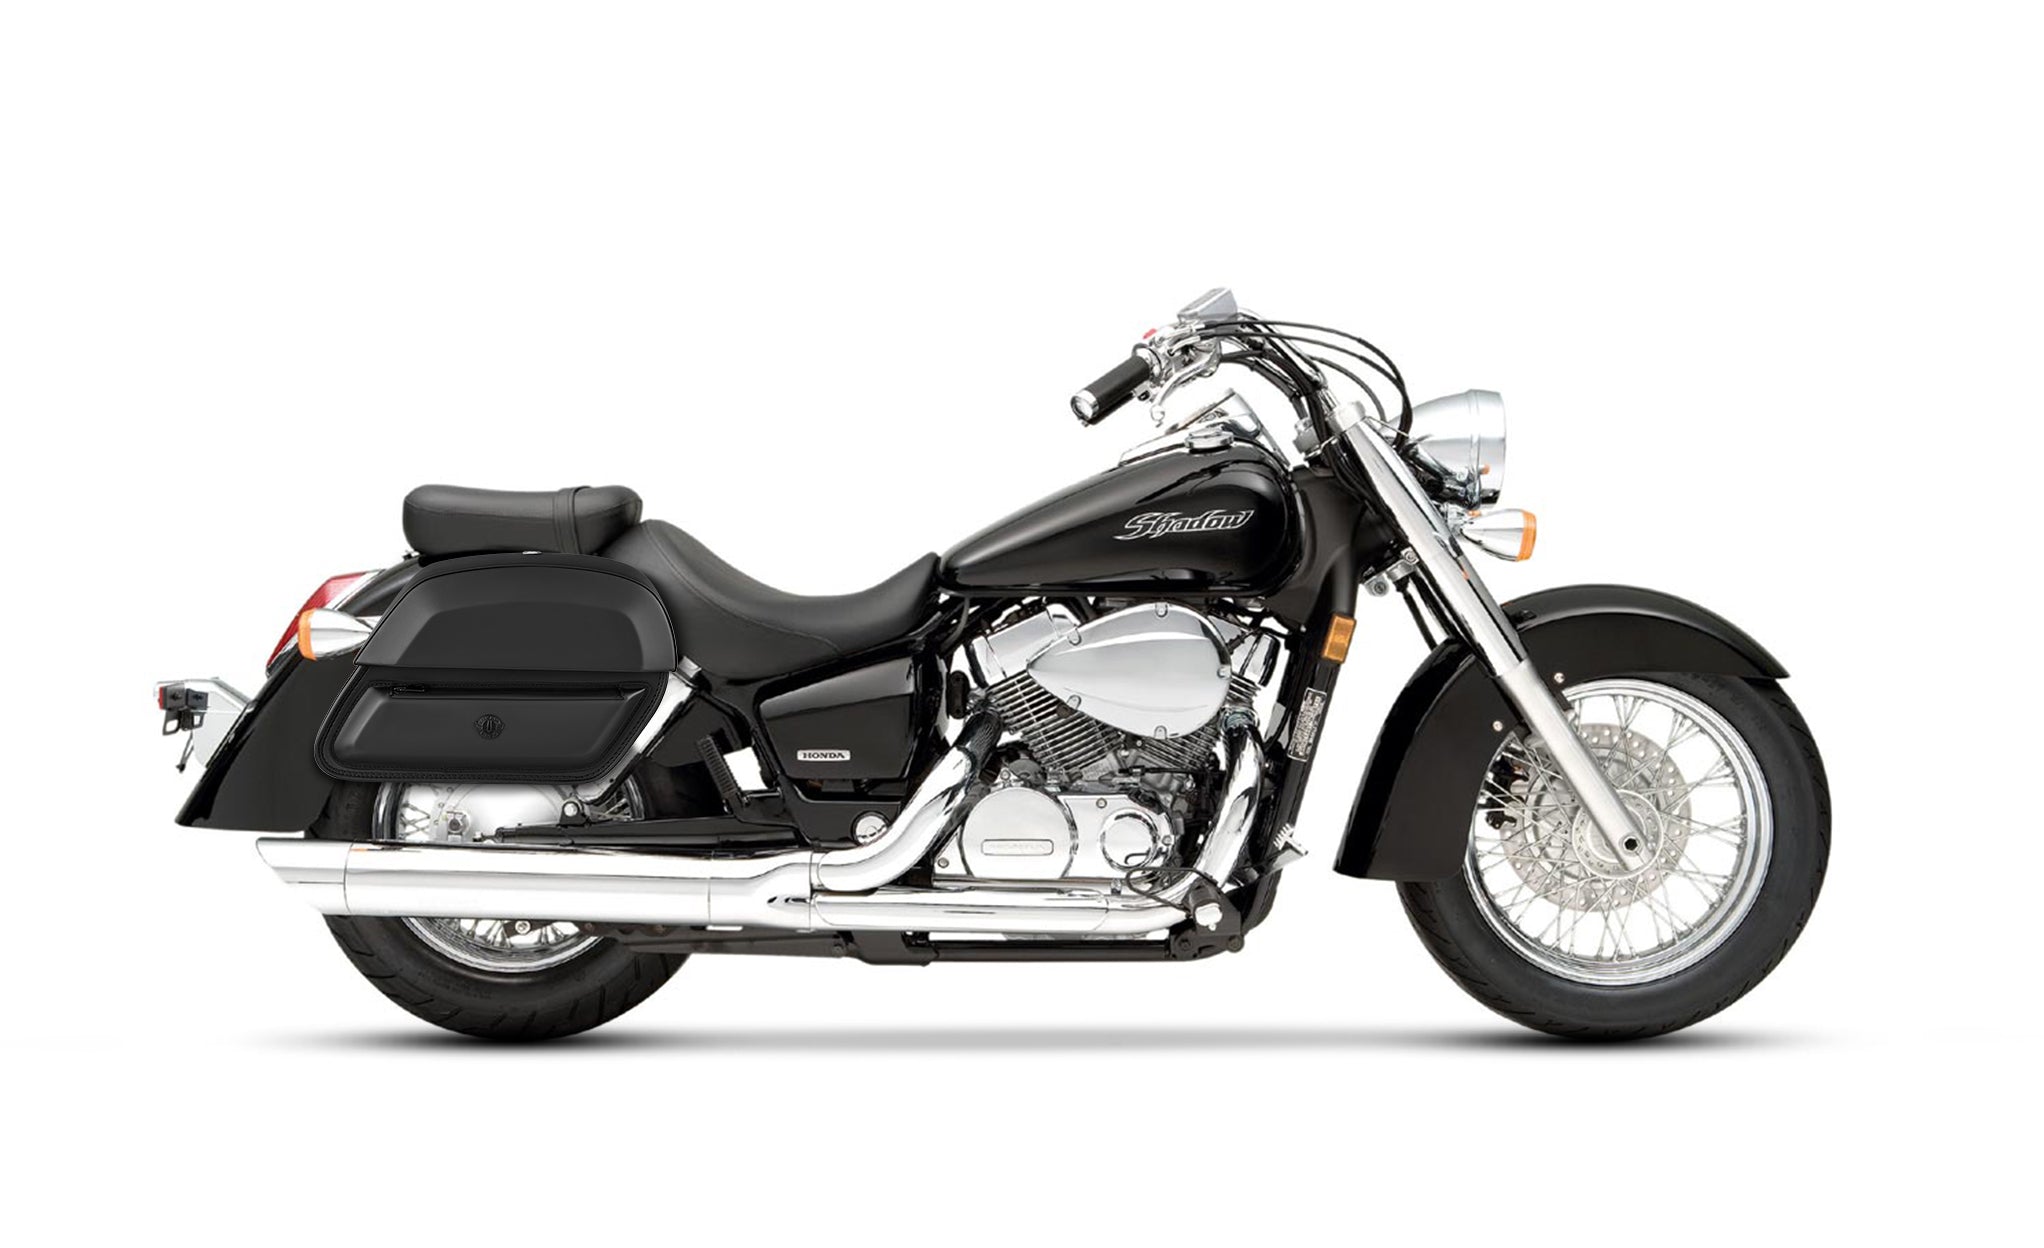 28L - Pantheon Medium Quick-Mount Honda Shadow 750 Aero Motorcycle Saddlebags @expand